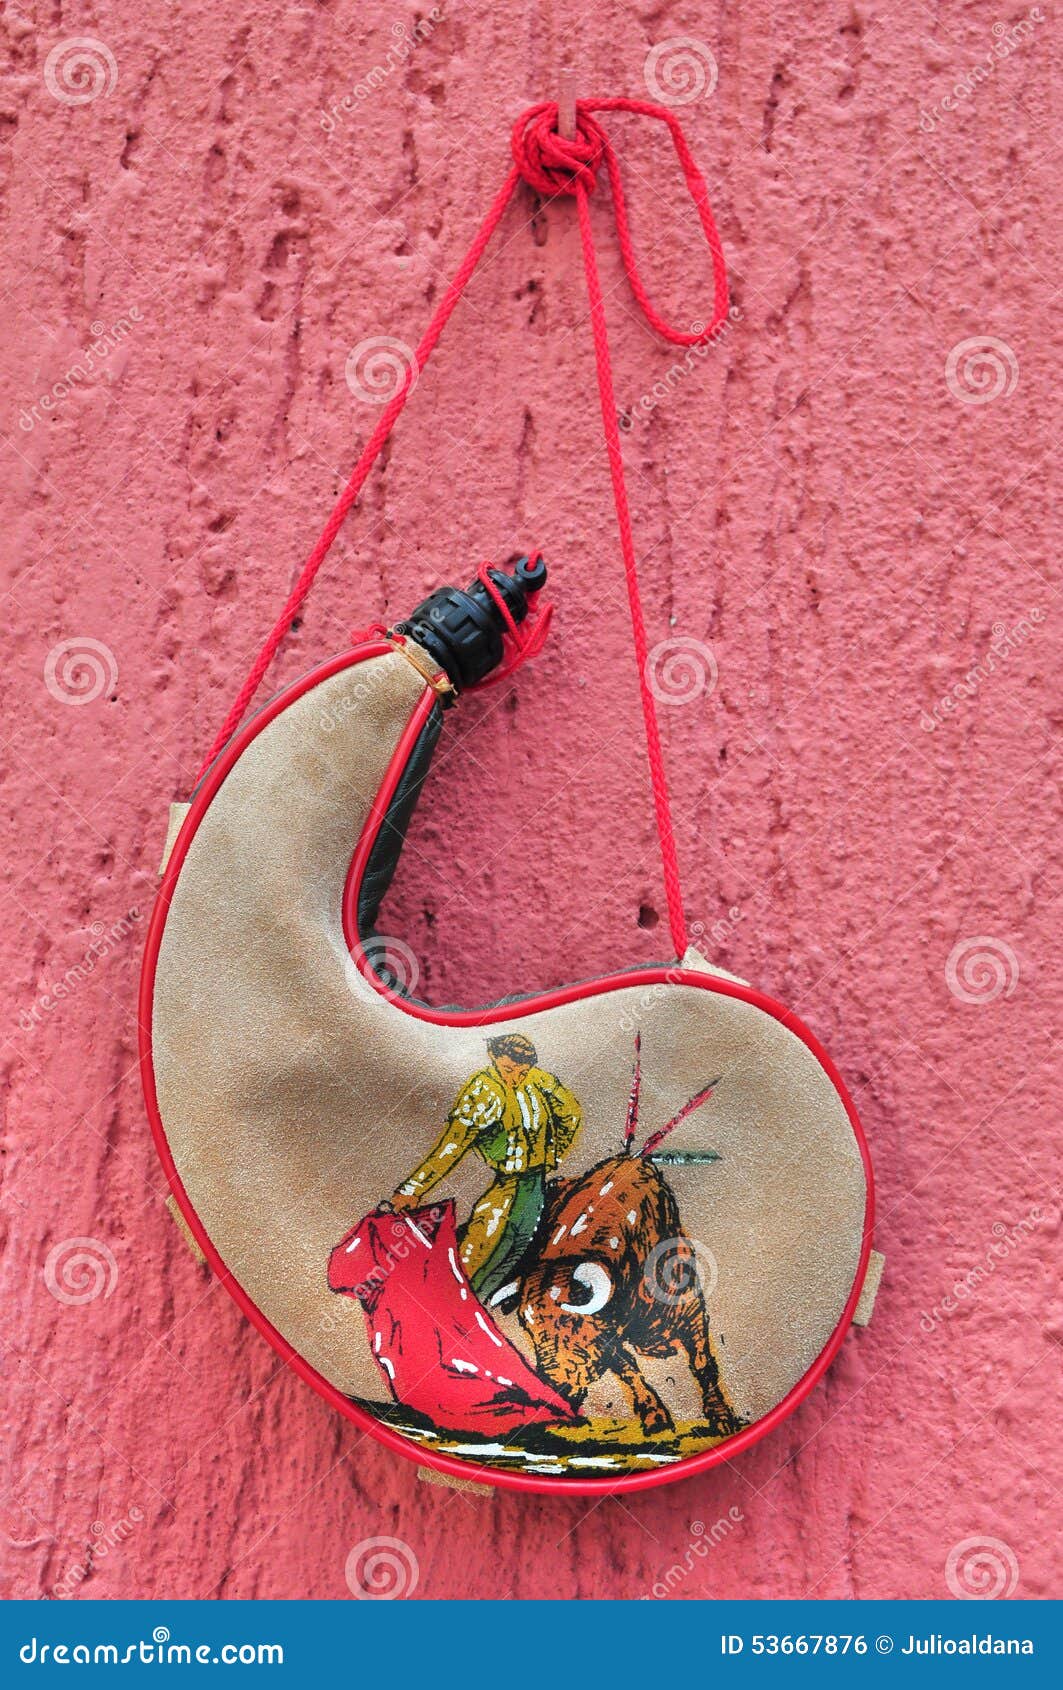 bullfighter bota bag or wineskin